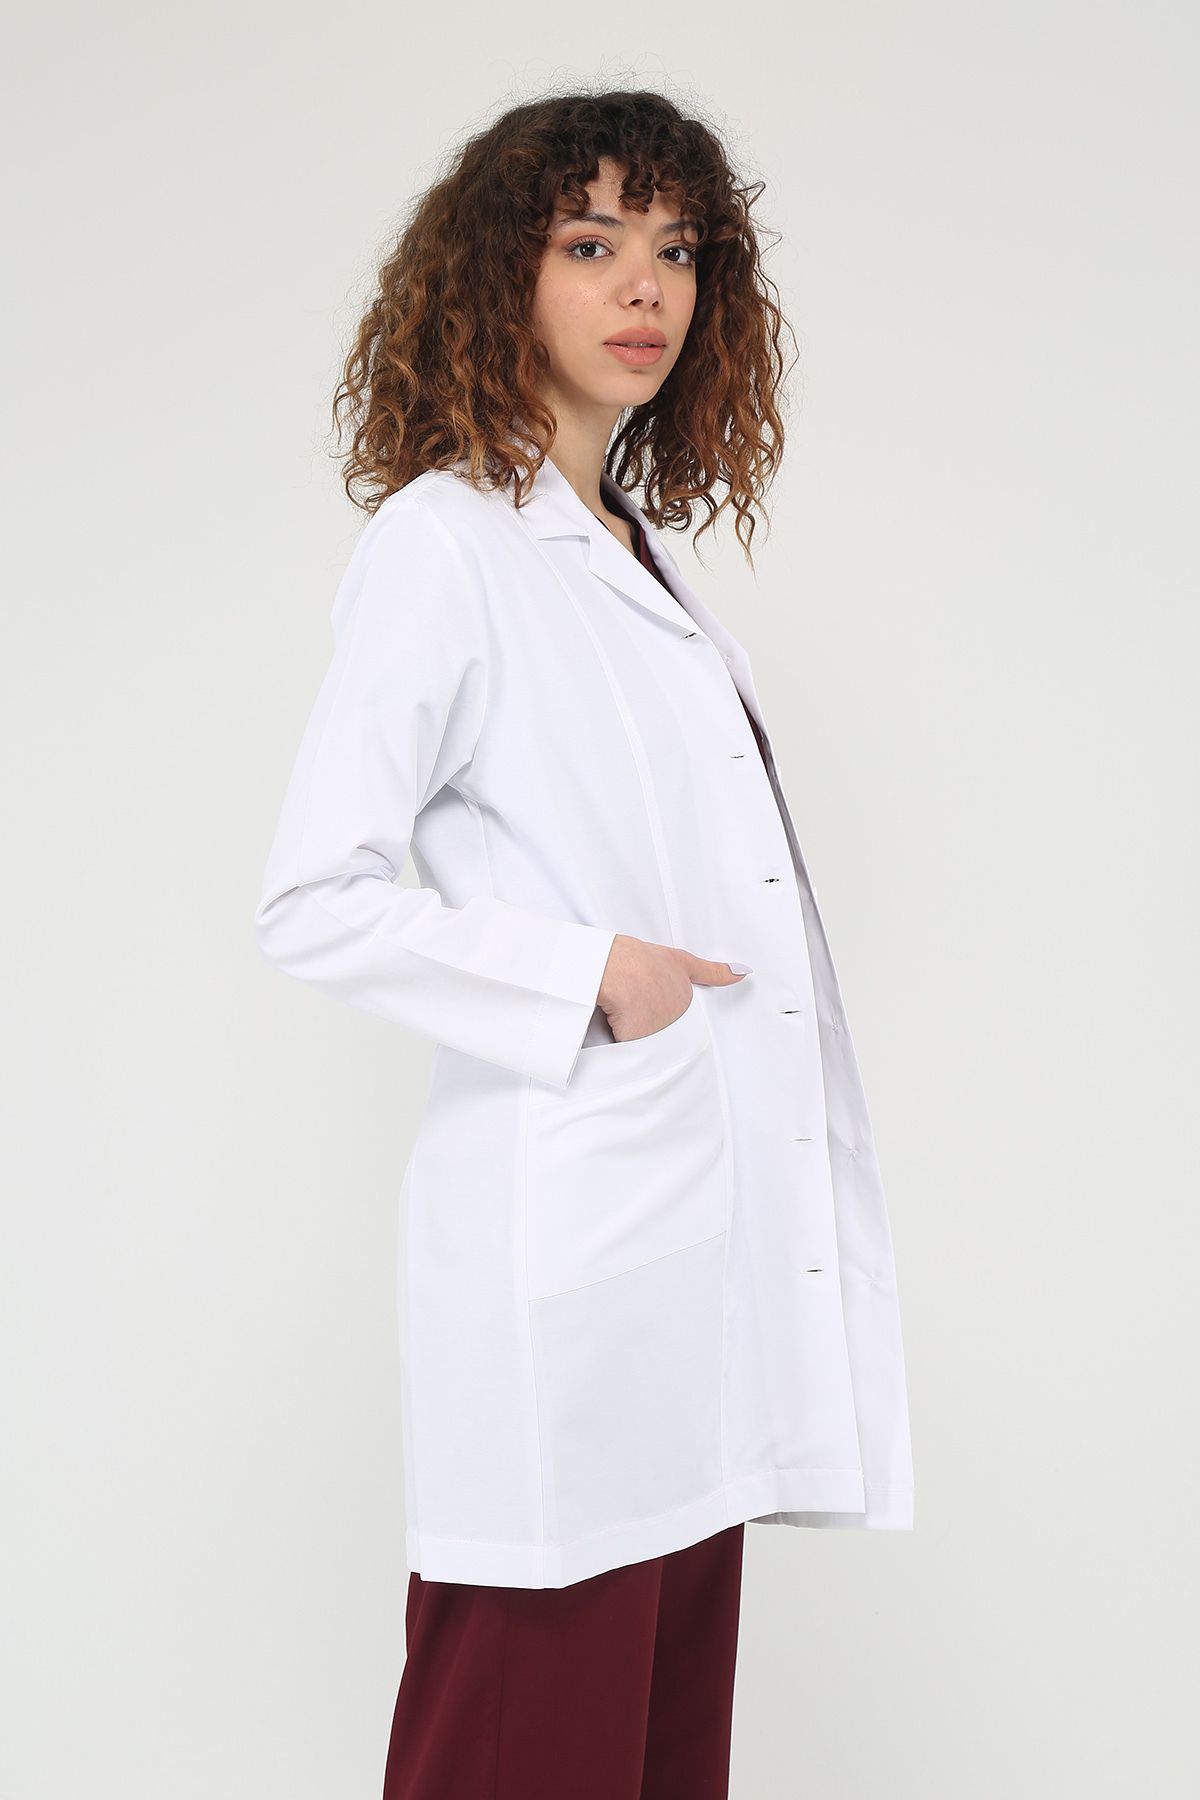 Snow Form Medical Apparel Uzun Kol Beyaz Ceket Boy Apaş Yaka Doktor Hemşire Öğretmen Önlüğü